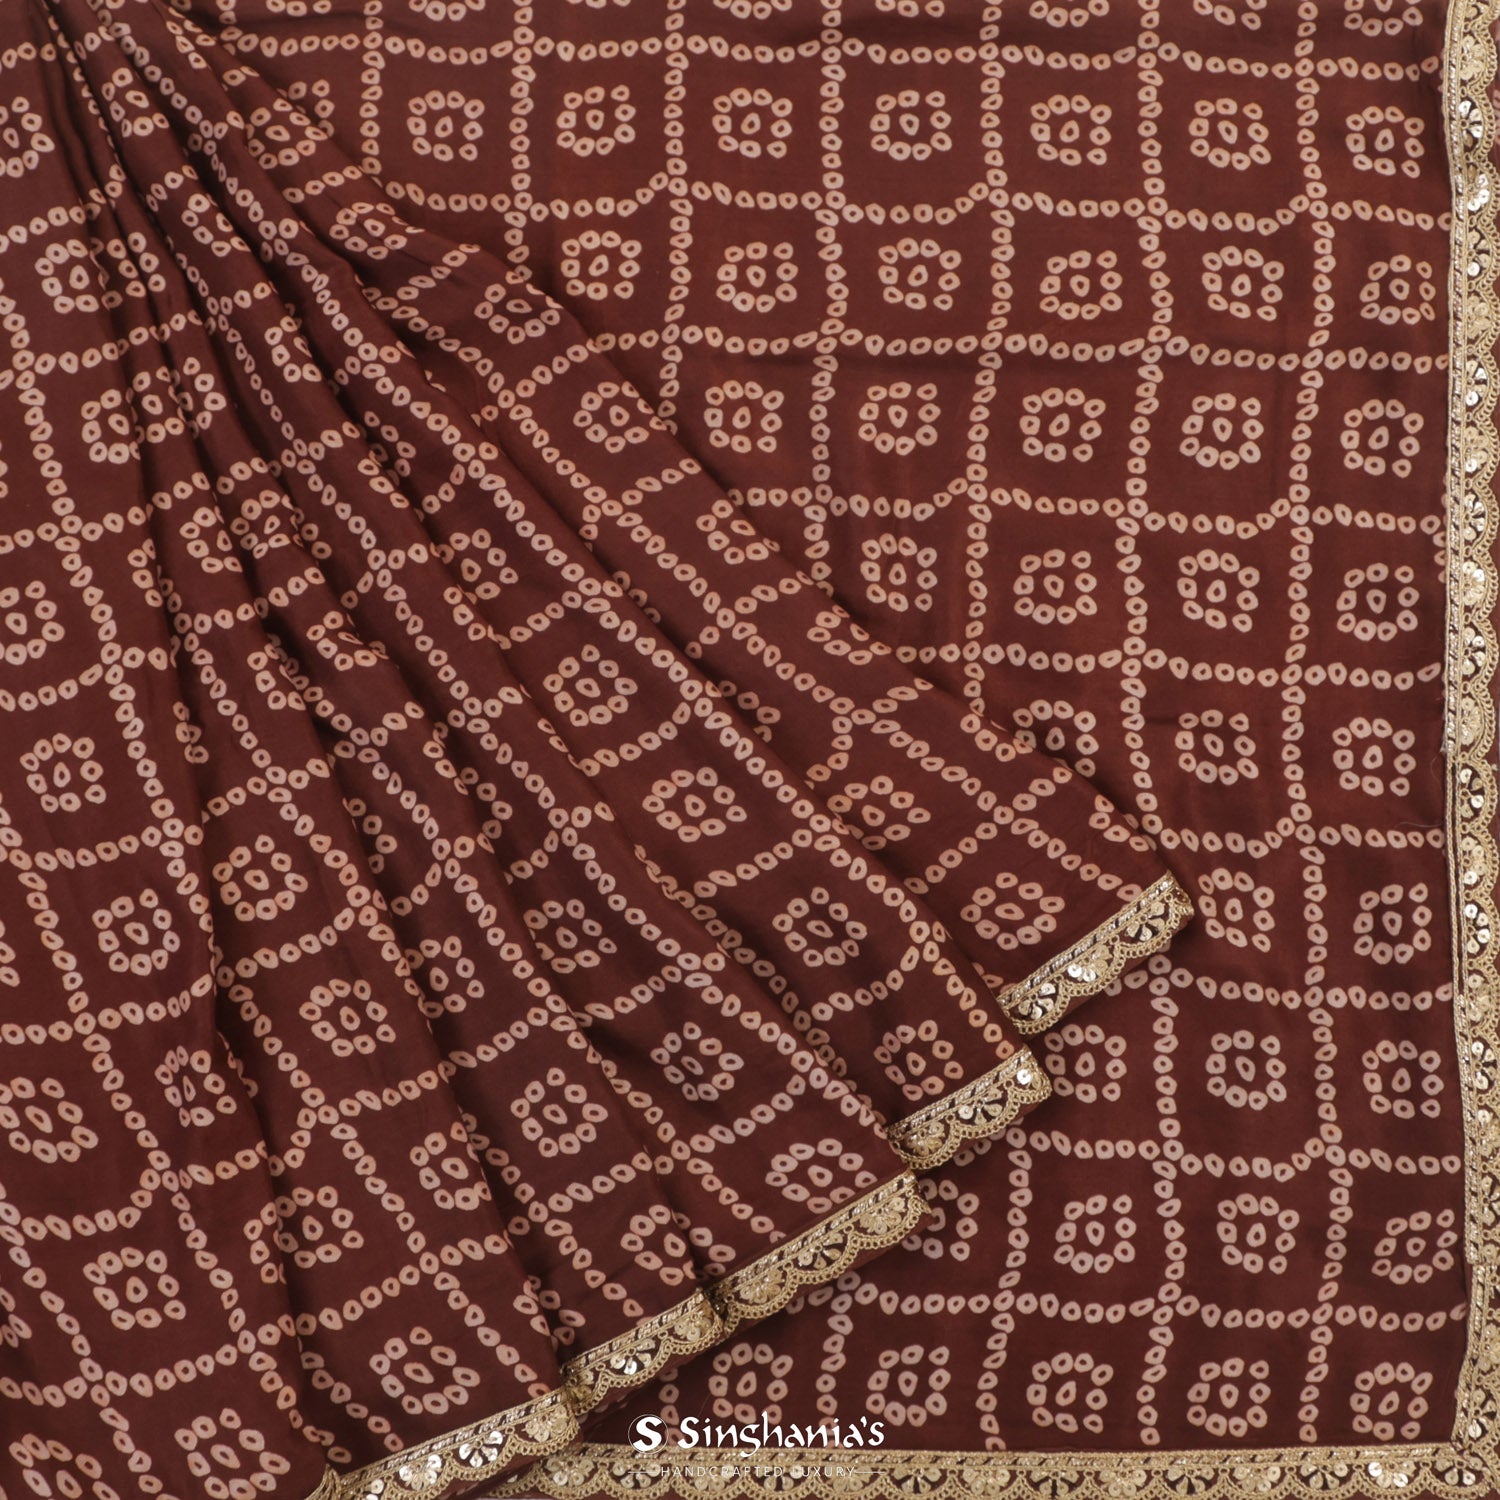 Dark Brown Printed Silk Saree With Bandhani Pattern